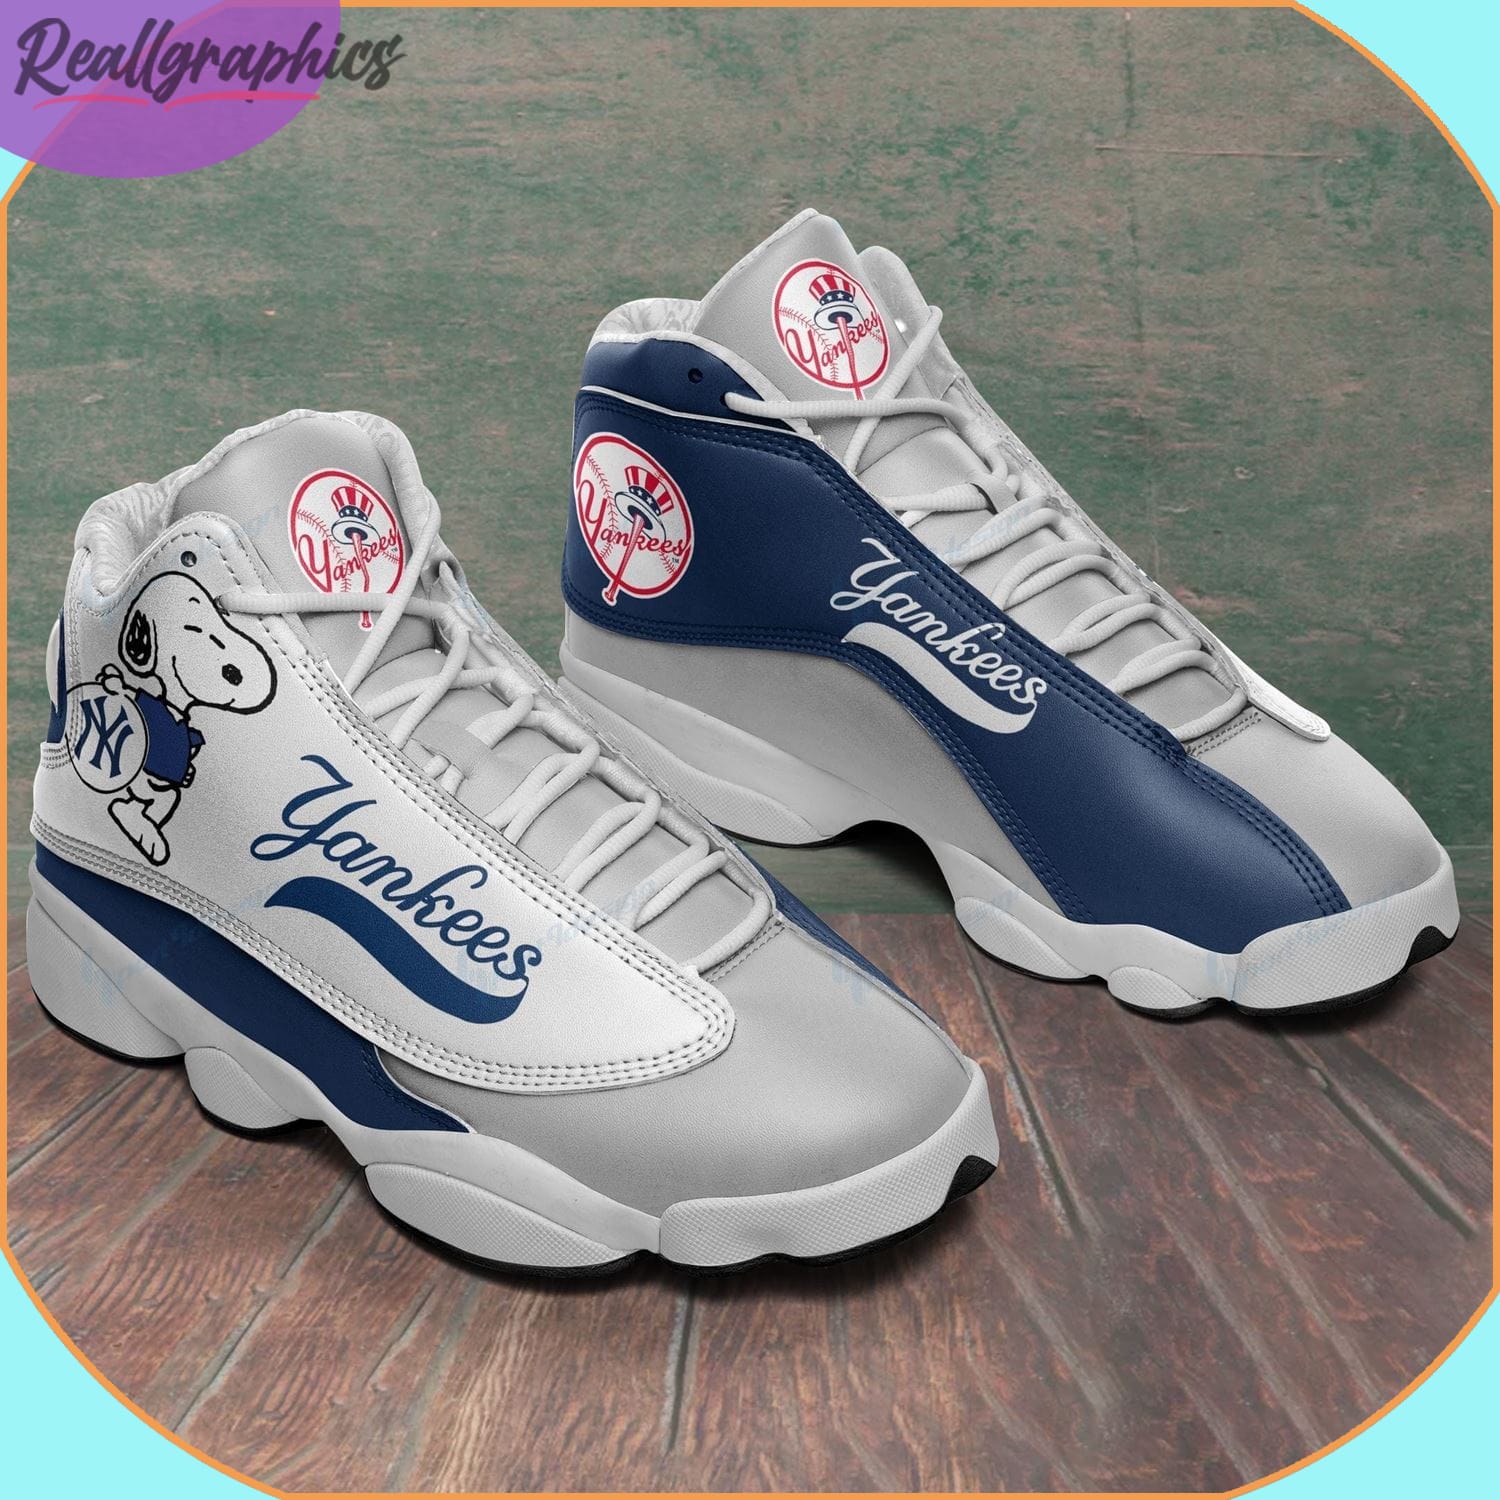 New York Yankees Air Jordan 13 Sneakers, MLB Yankees Shoes